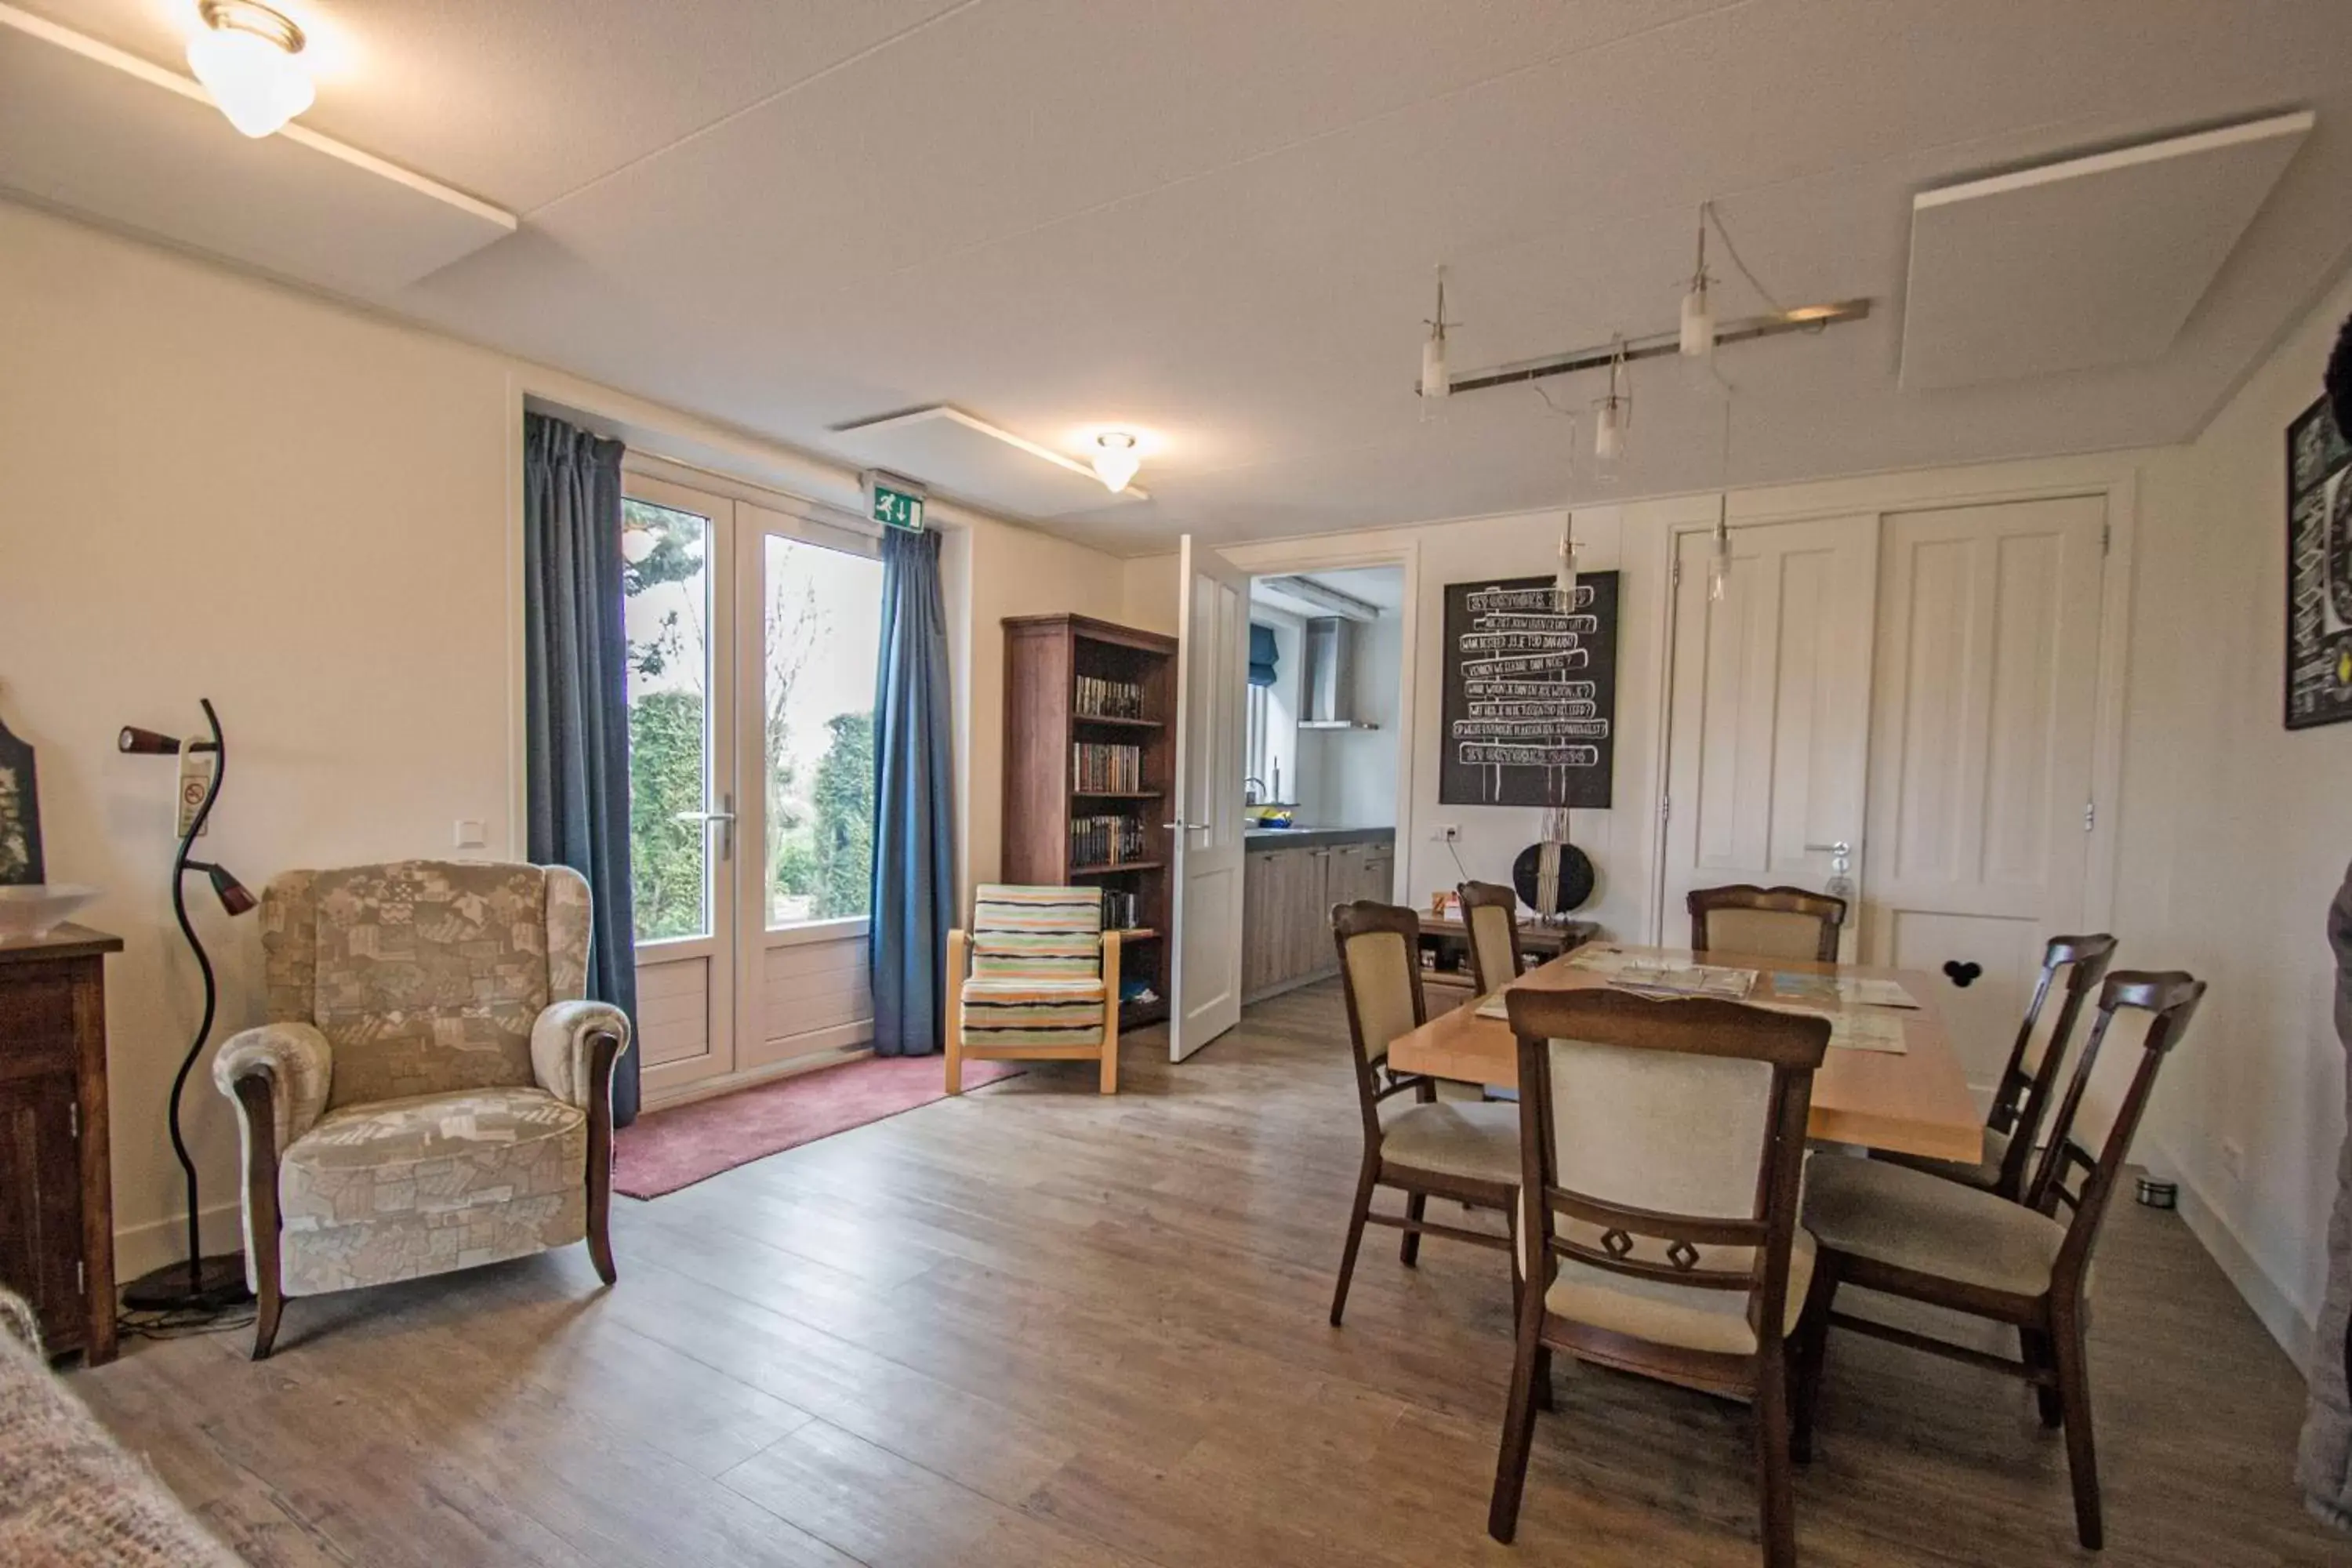 Living room, Dining Area in B&B “Te Warskip bij BlokVis”